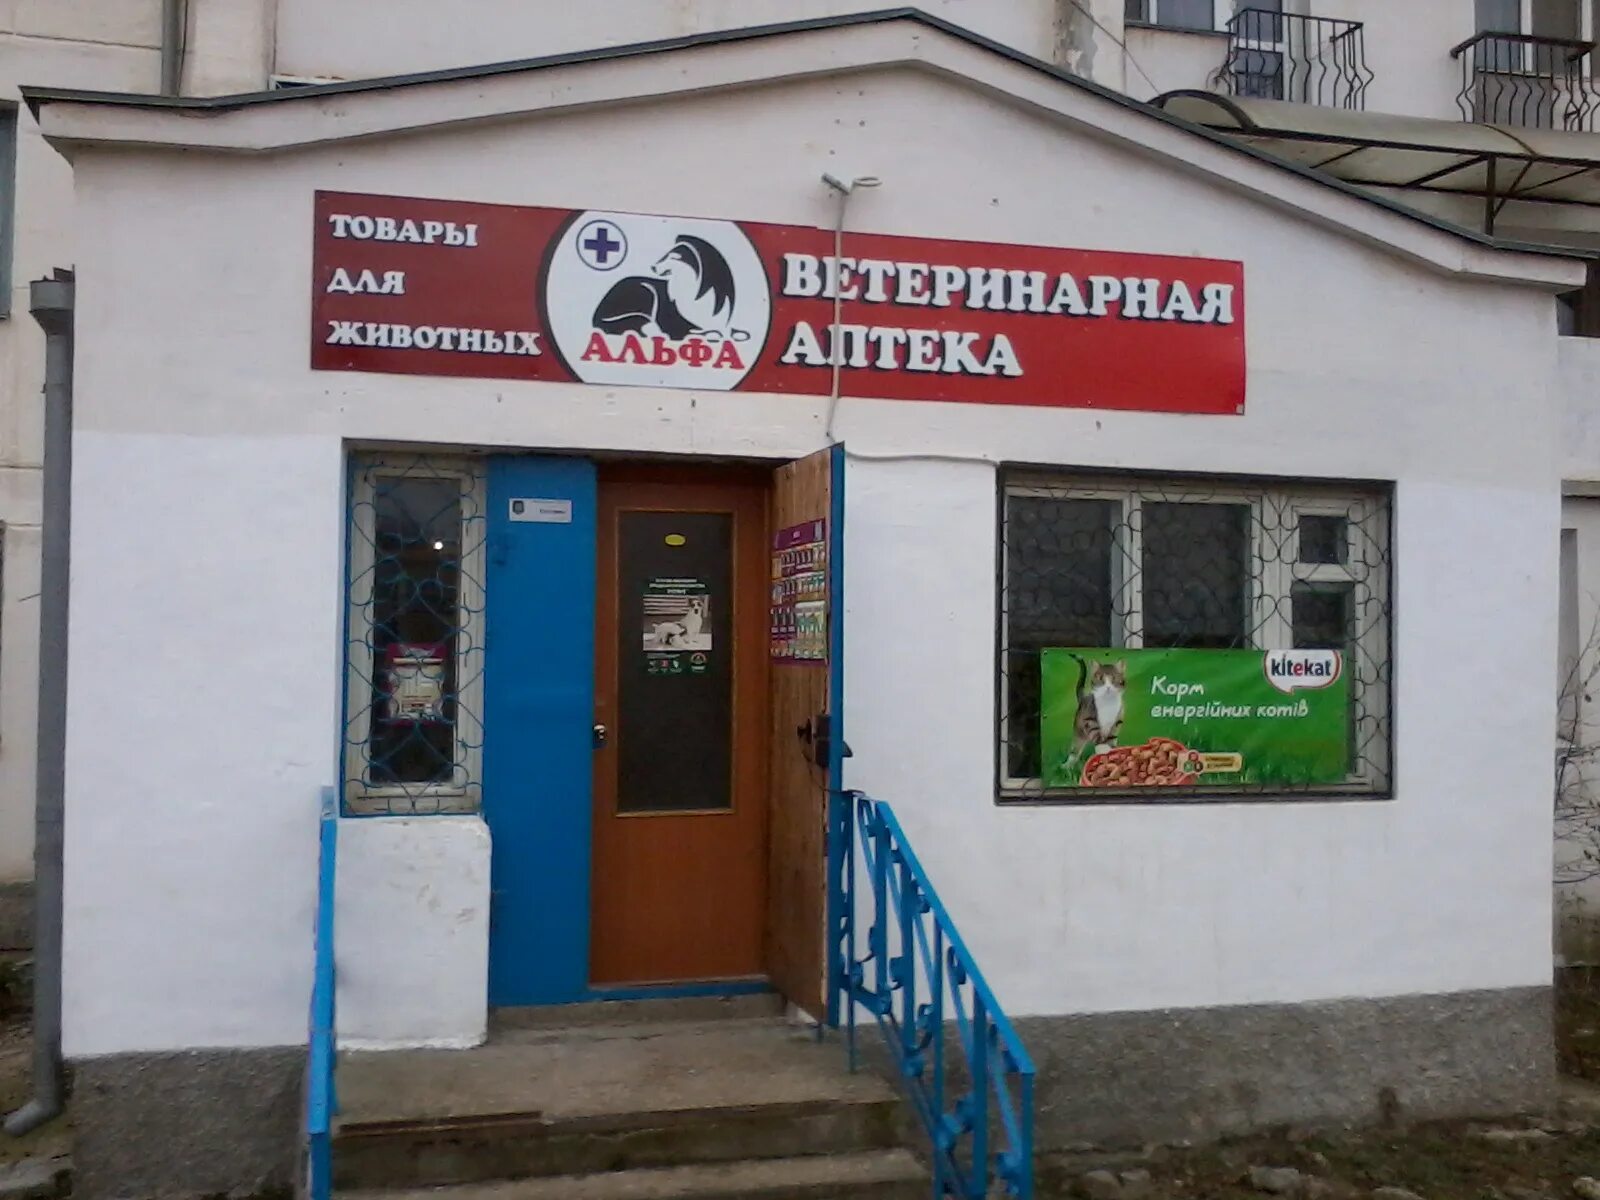 Альфа ветеринарная клиника Севастополь. Ветеринарная аптека. Ветеринарная аптека Кызыл. Ветеринарная аптека магазин